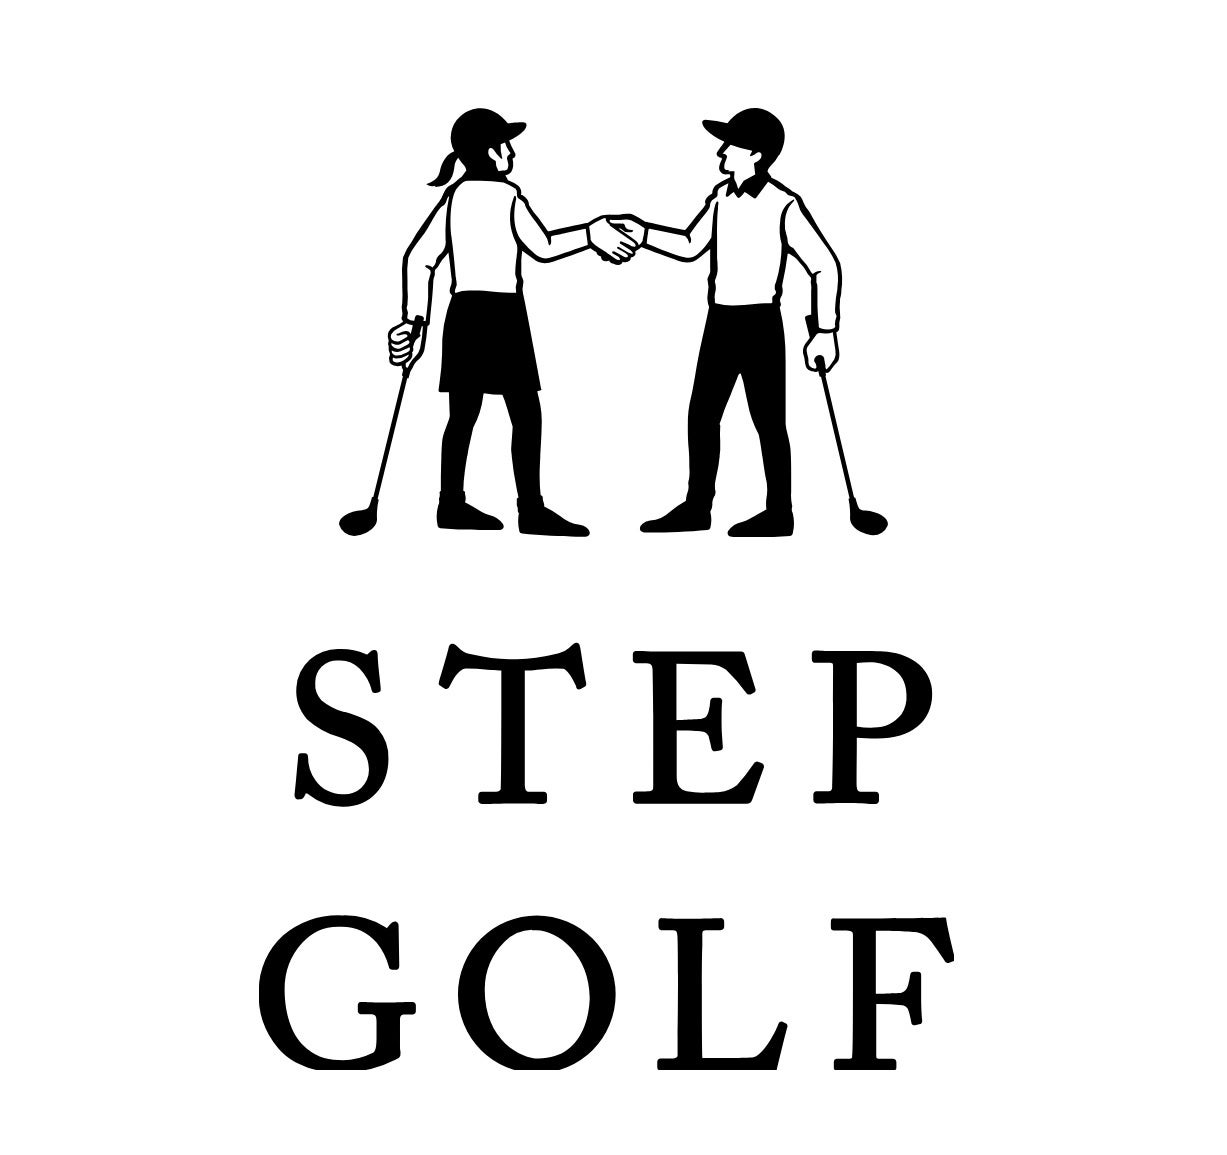 全国に110店舗超えのインドアゴルフスクール「ステップゴルフ」福岡に2店舗目となる『ステップゴルフプラス六...